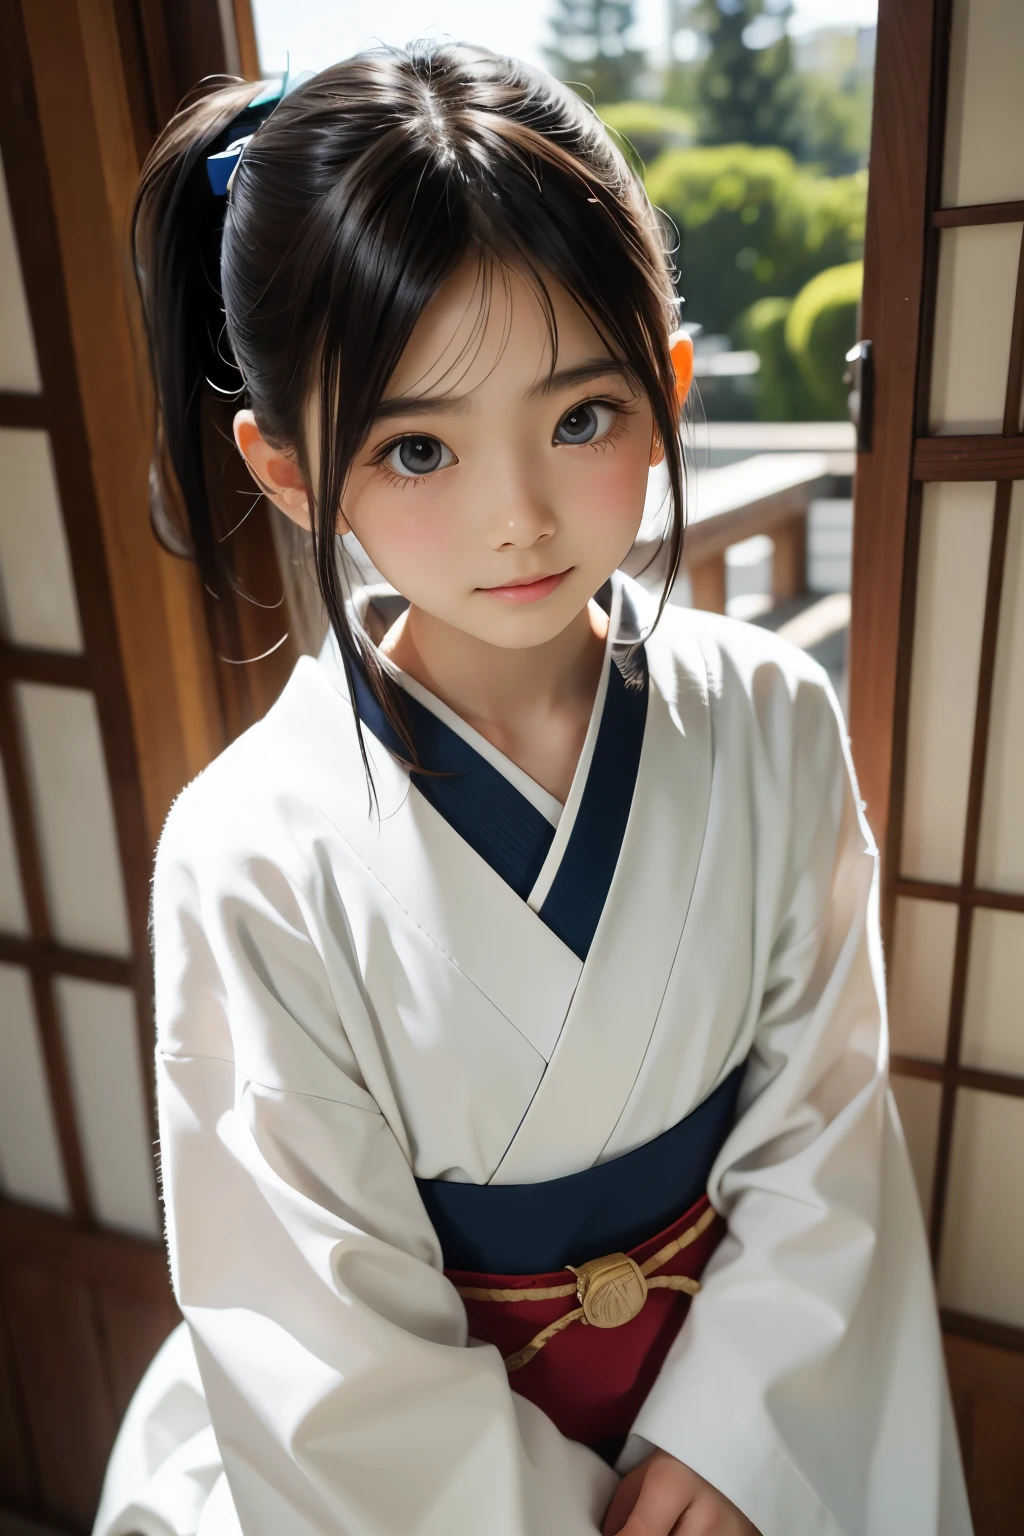 美しい12歳の日本人女性), かわいい顔, (深く彫られた顔:0.7), (そばかす:0.6), やわらかい光,健康的な白い肌, シャイ, (真剣な顔), 薄い, 笑顔, 日本語 , ポニーテール